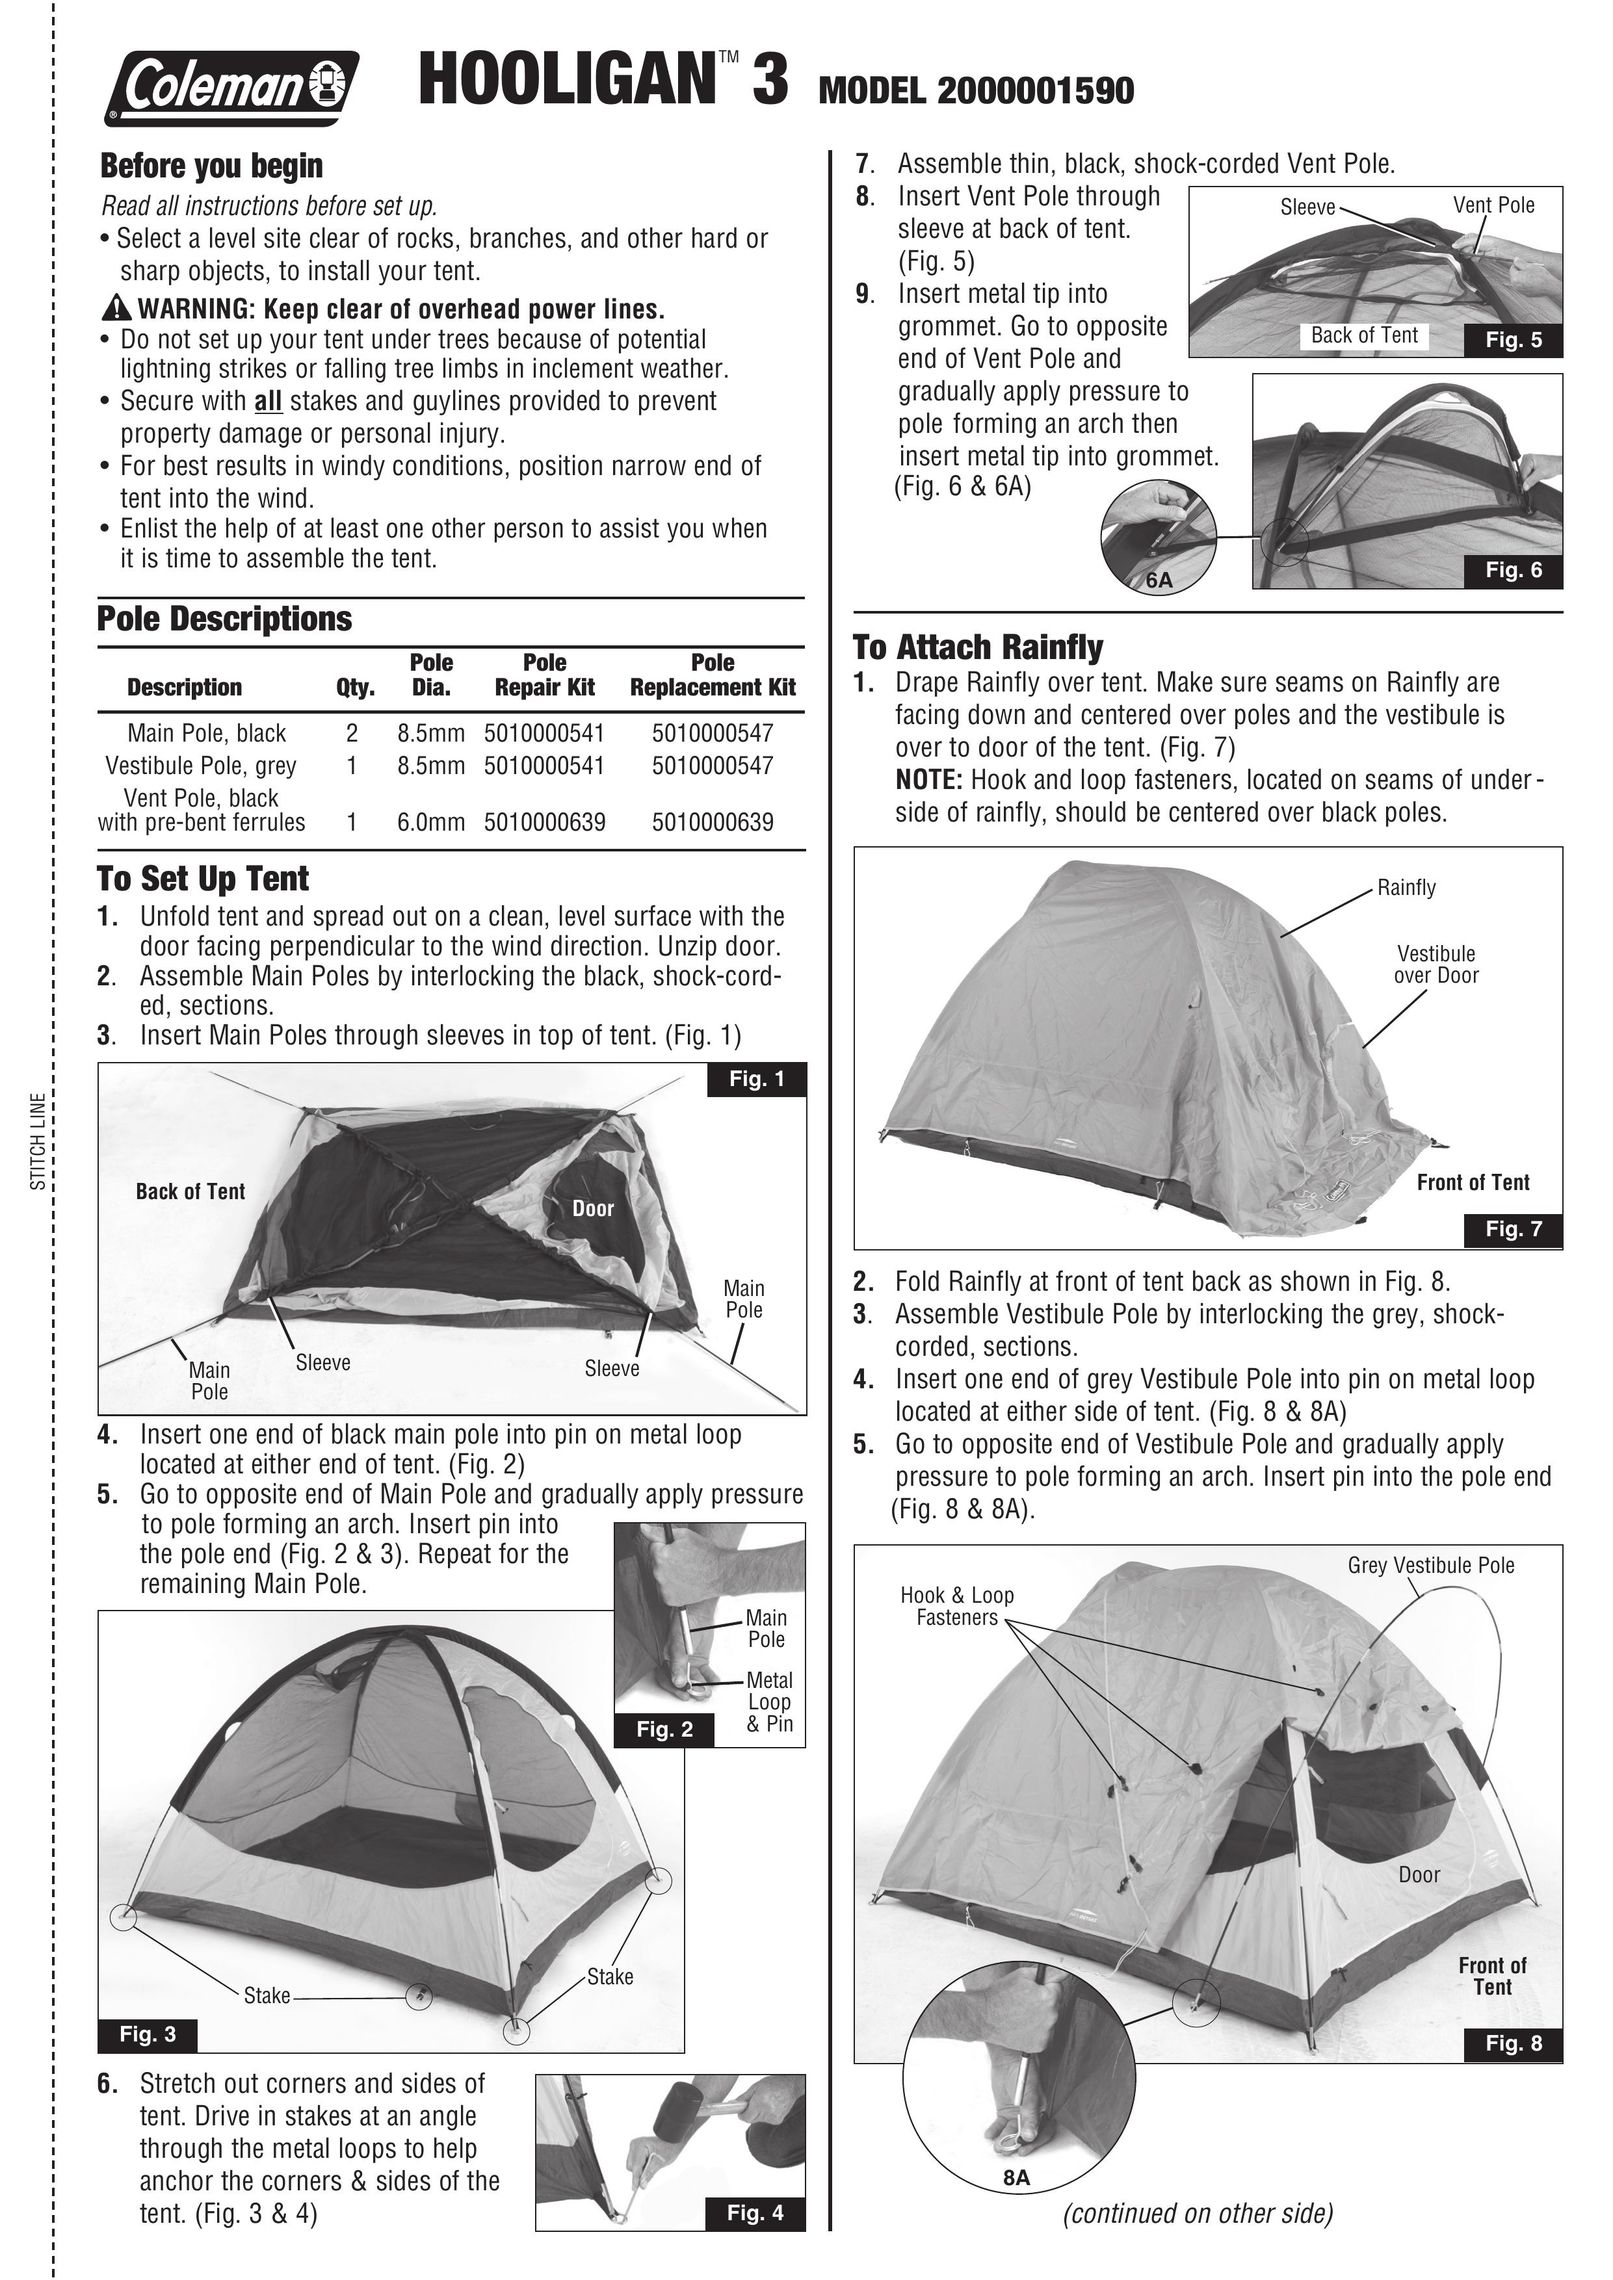 Coleman 2000001590 Tent User Manual